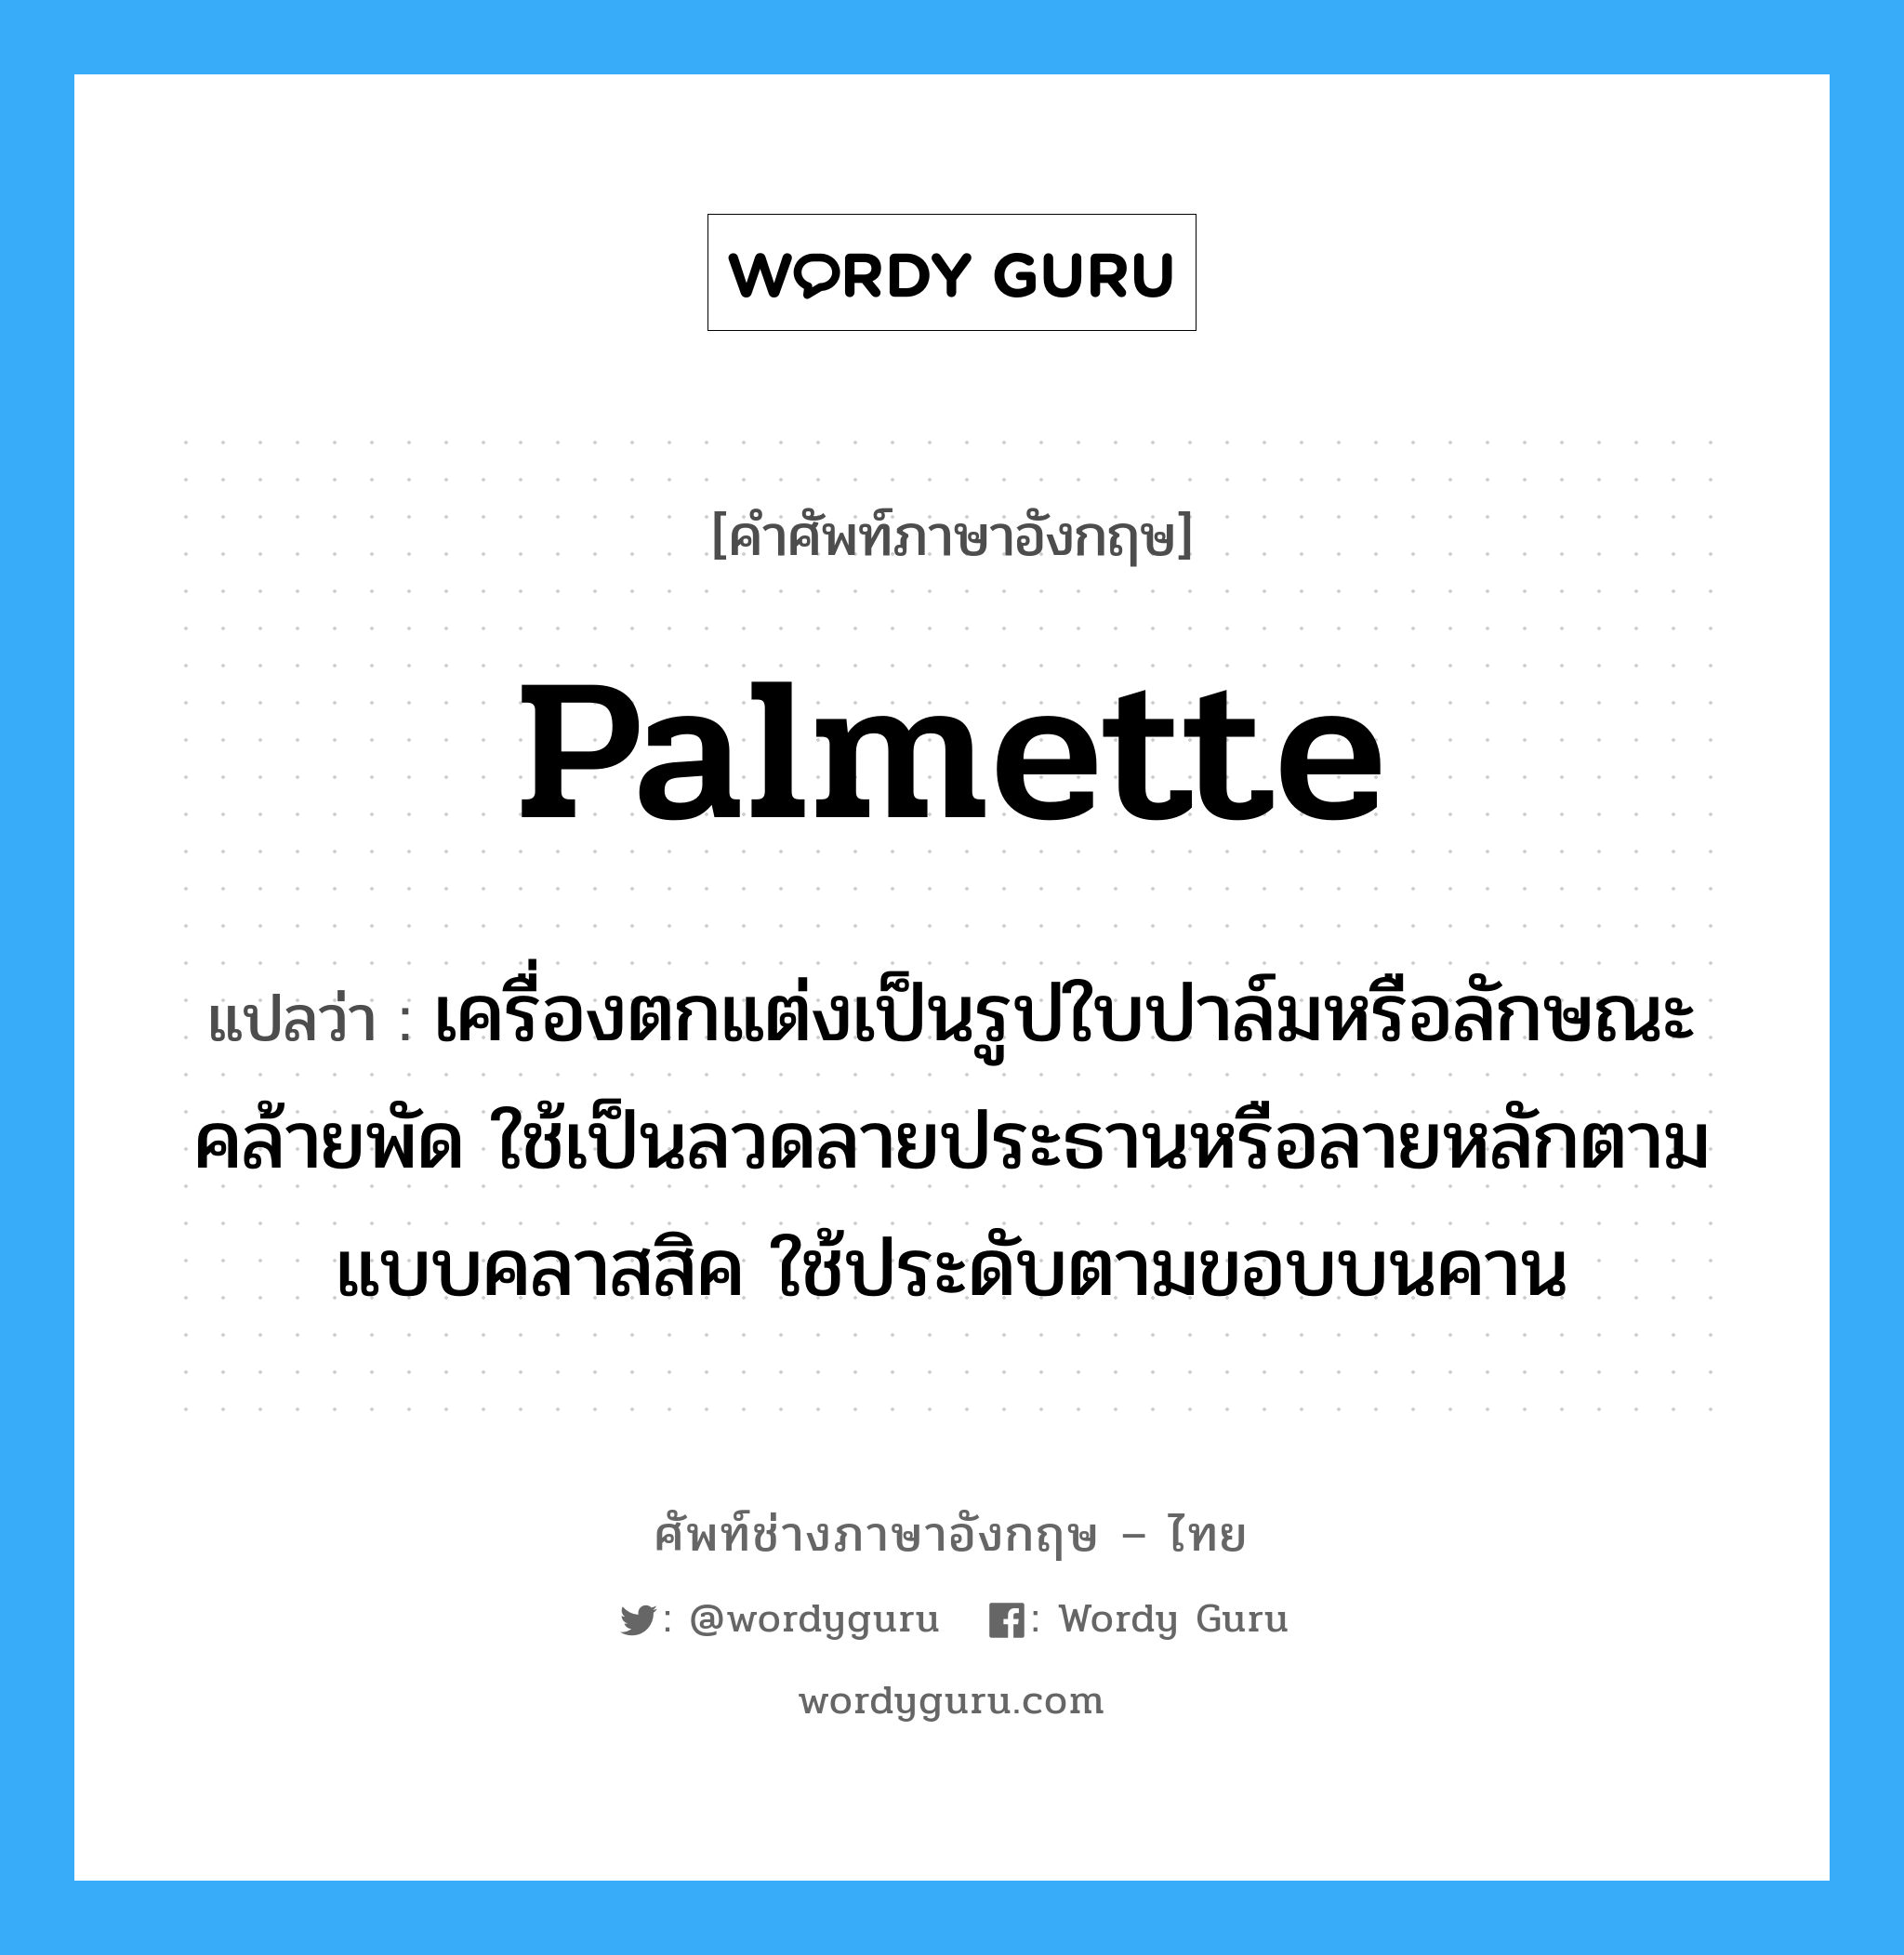 palmette แปลว่า?, คำศัพท์ช่างภาษาอังกฤษ - ไทย palmette คำศัพท์ภาษาอังกฤษ palmette แปลว่า เครื่องตกแต่งเป็นรูปใบปาล์มหรือลักษณะคล้ายพัด ใช้เป็นลวดลายประธานหรือลายหลักตามแบบคลาสสิค ใช้ประดับตามขอบบนคาน